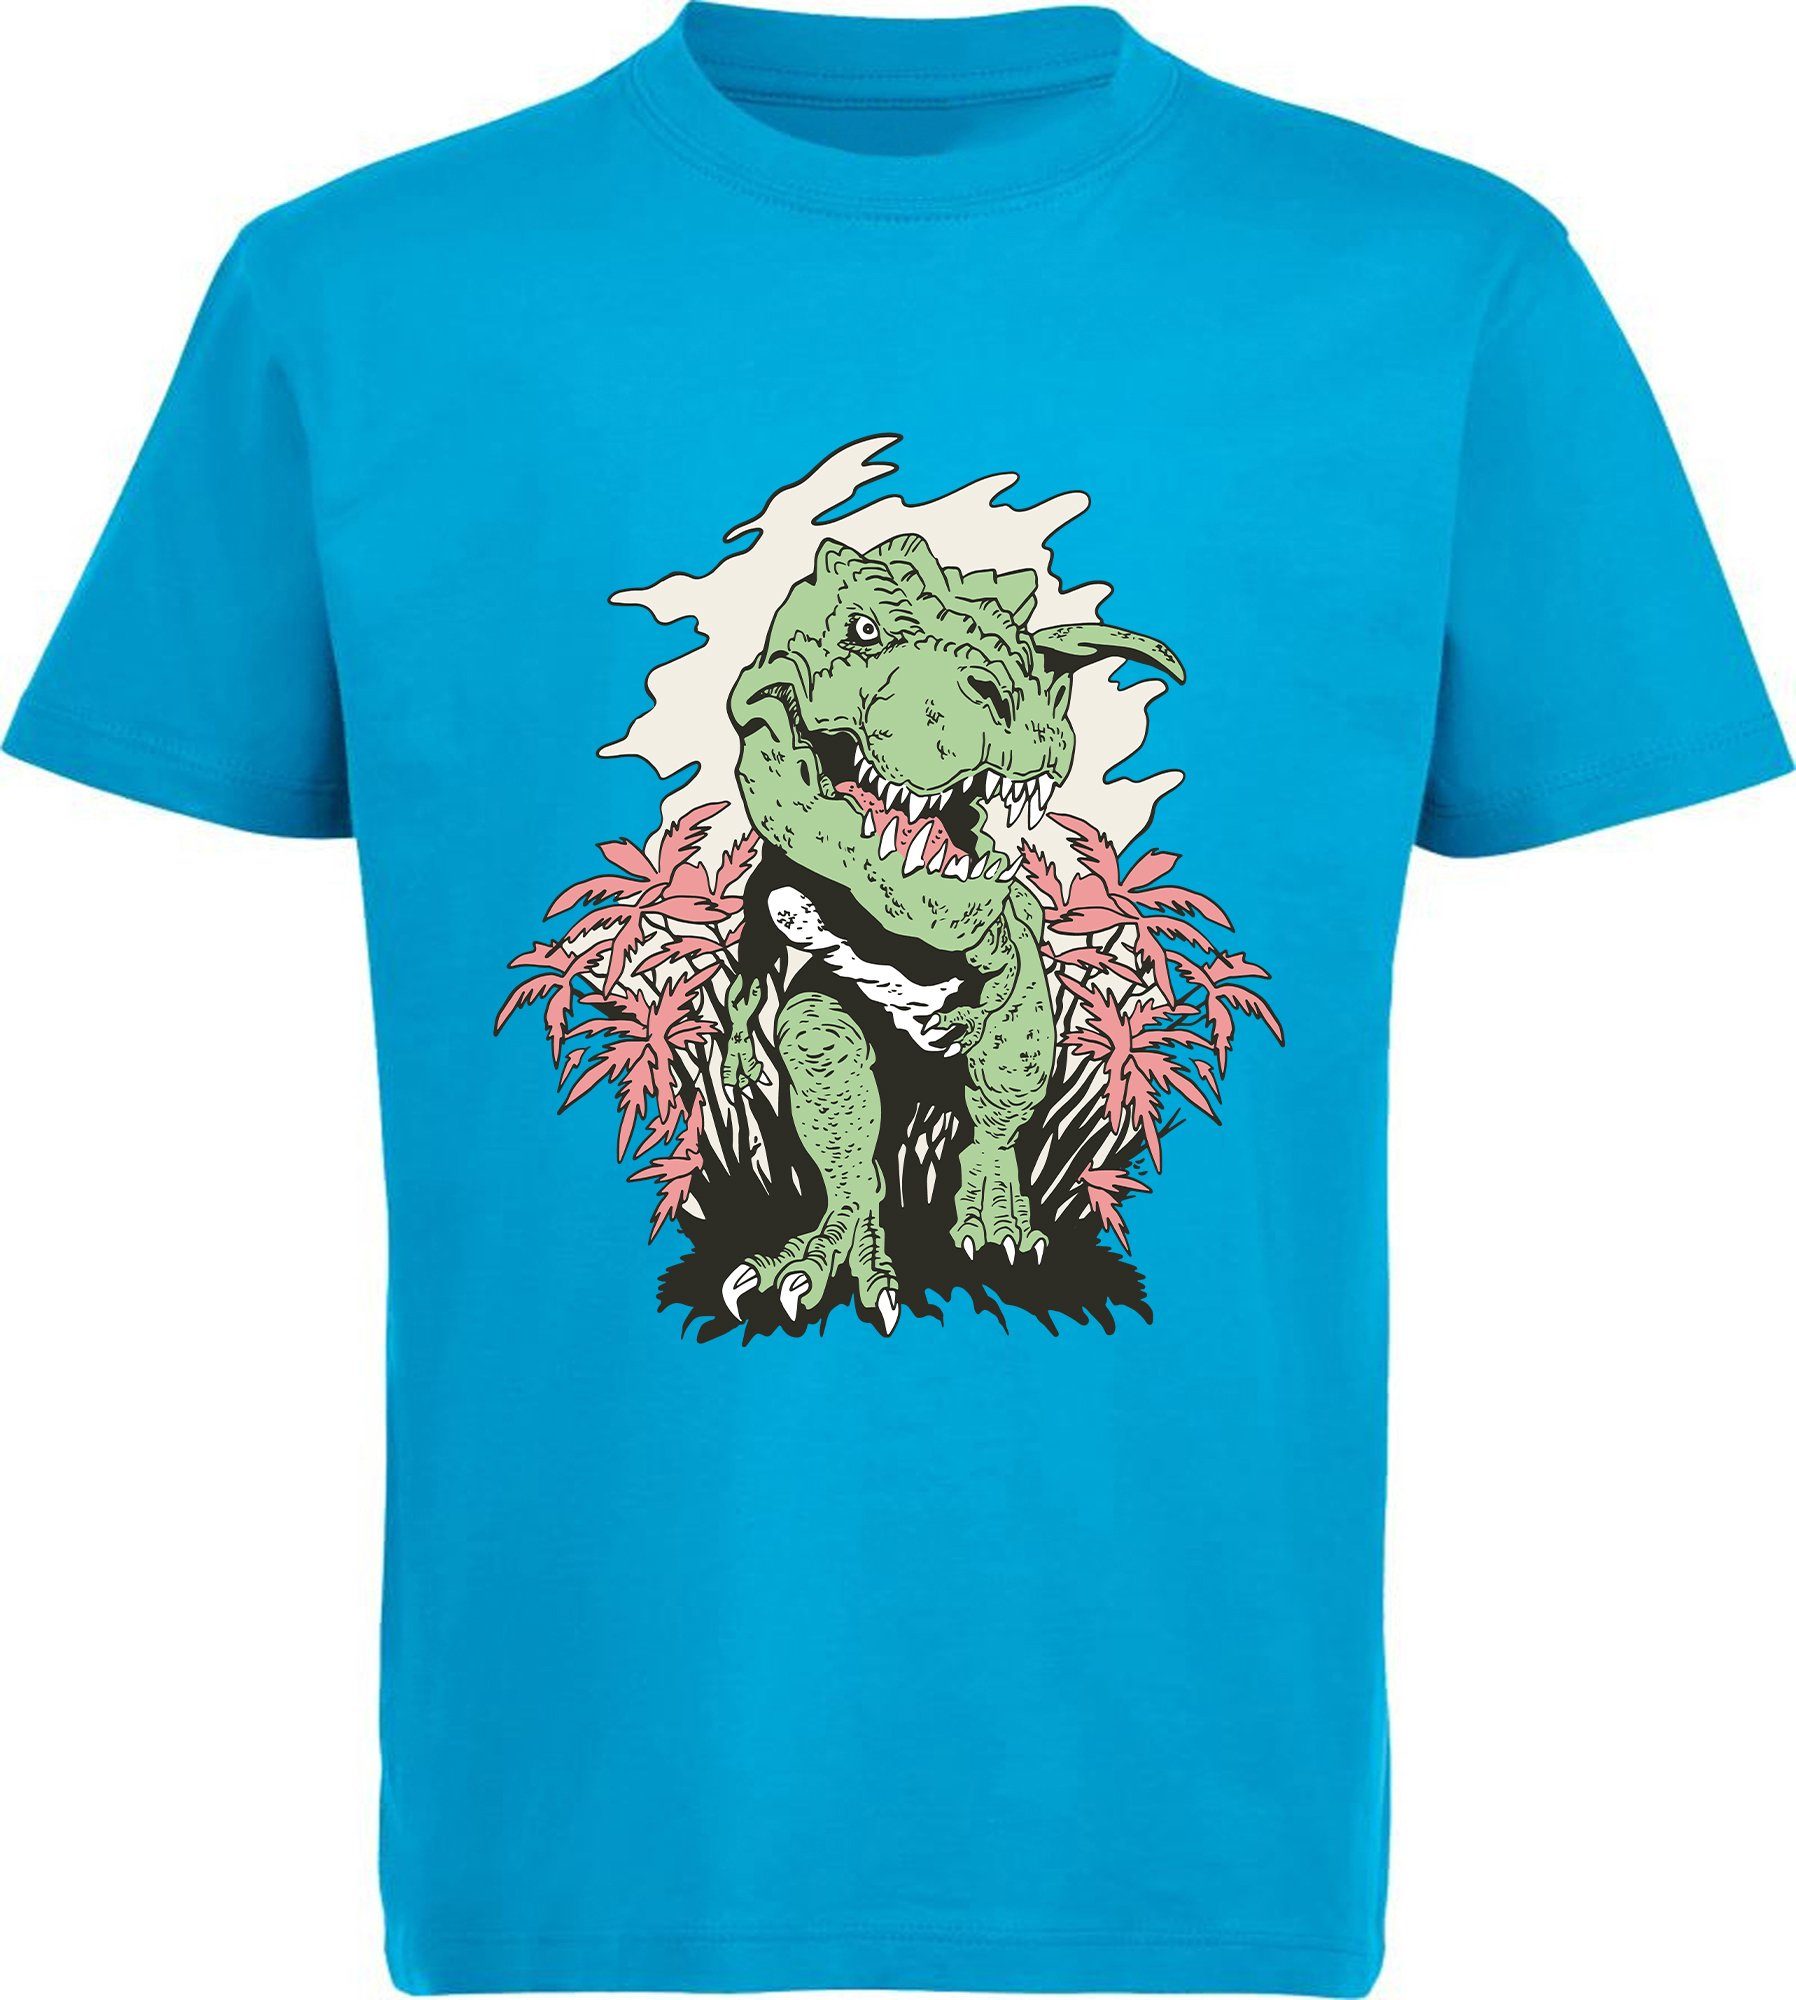 MyDesign24 Print-Shirt bedrucktes Kinder T-Shirt T-Rex der aus einem Busch kommt 100% Baumwolle mit Dino Aufdruck, schwarz, weiß, rot, blau, i101 aqua blau